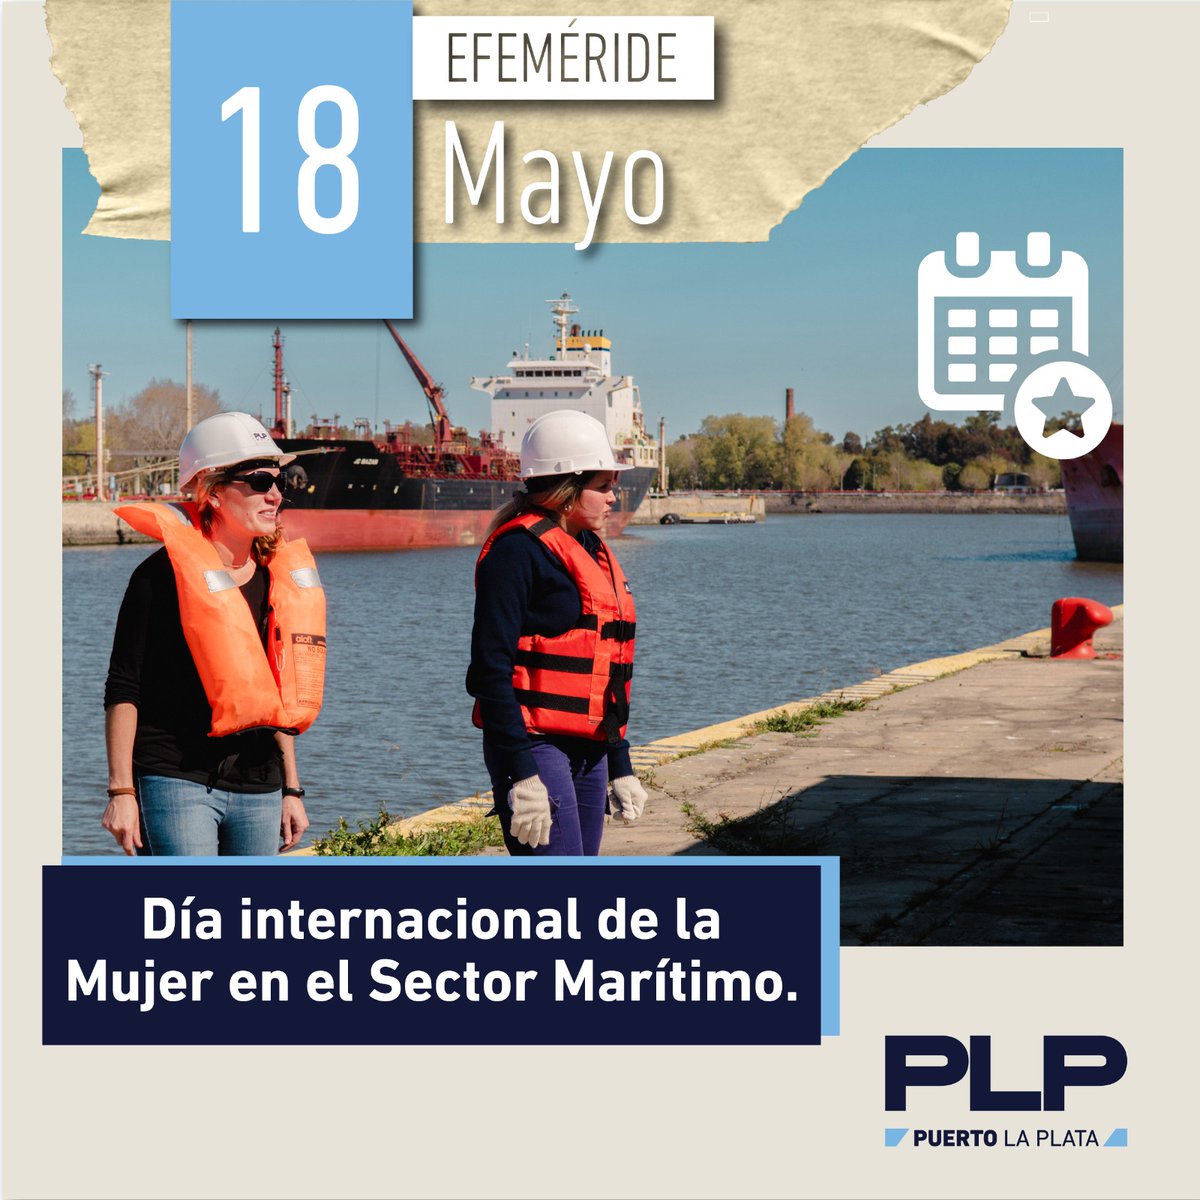 🗓️18 de mayo 👩‍🦰Día internacional de la Mujer en el Sector Marítimo. 💜Celebramos este día con el compromiso de continuar creando entornos laborales igualitarios.